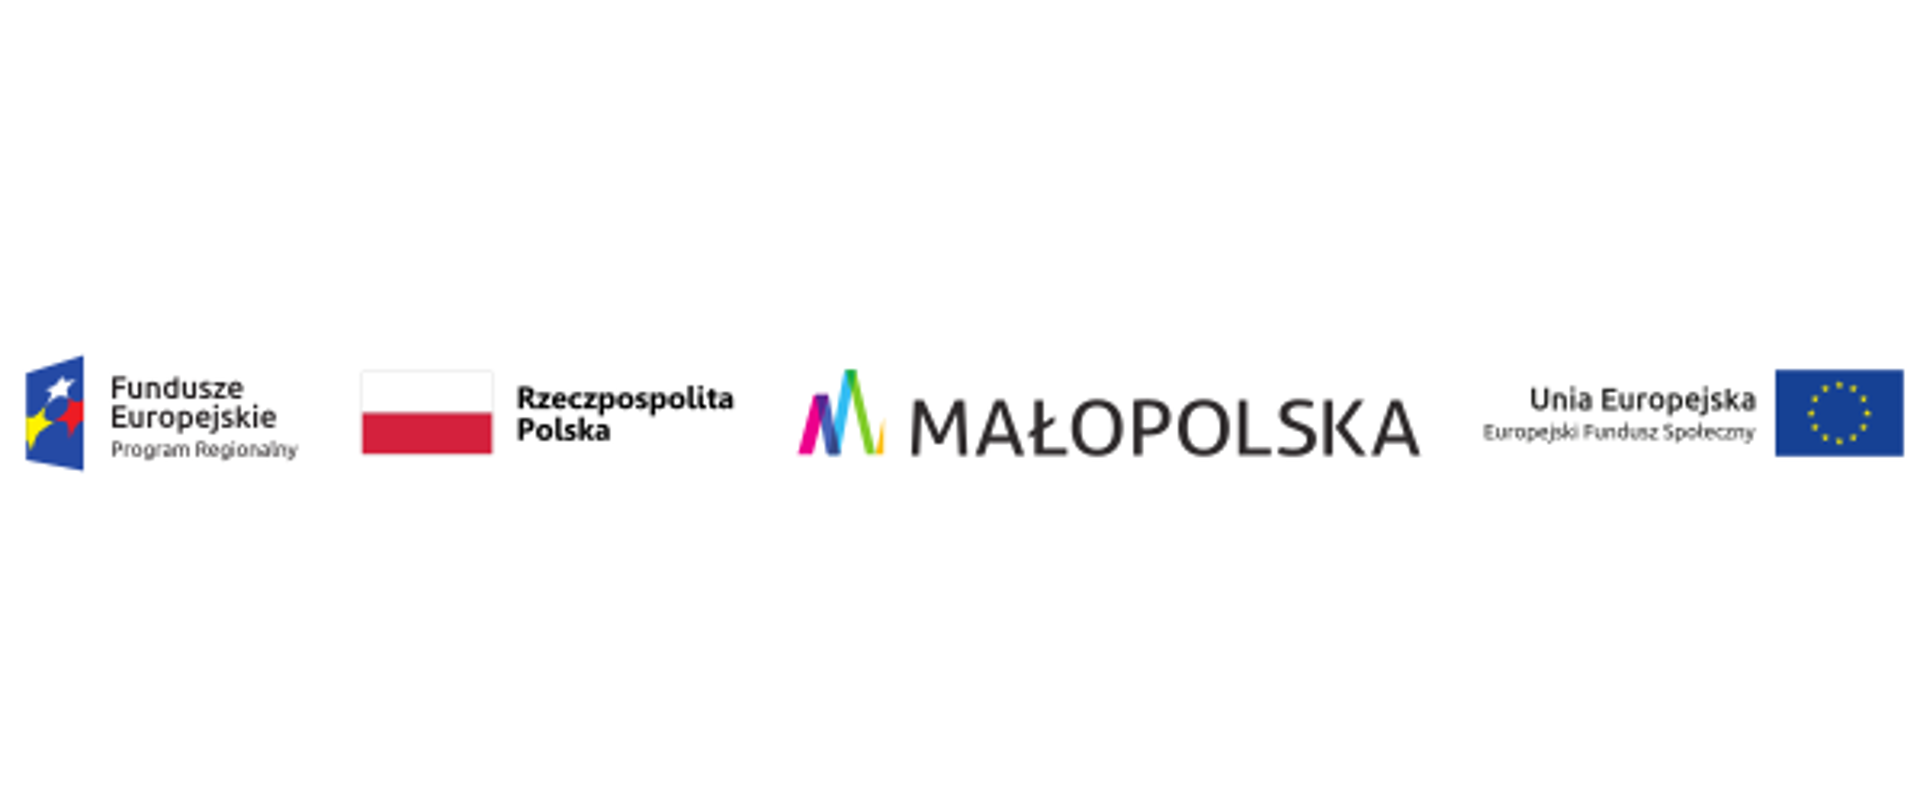 Logotypy: Fundusze Europejskie, Rzeczpospolita Polska, Małopolska, Europejski Fundusz Społeczny